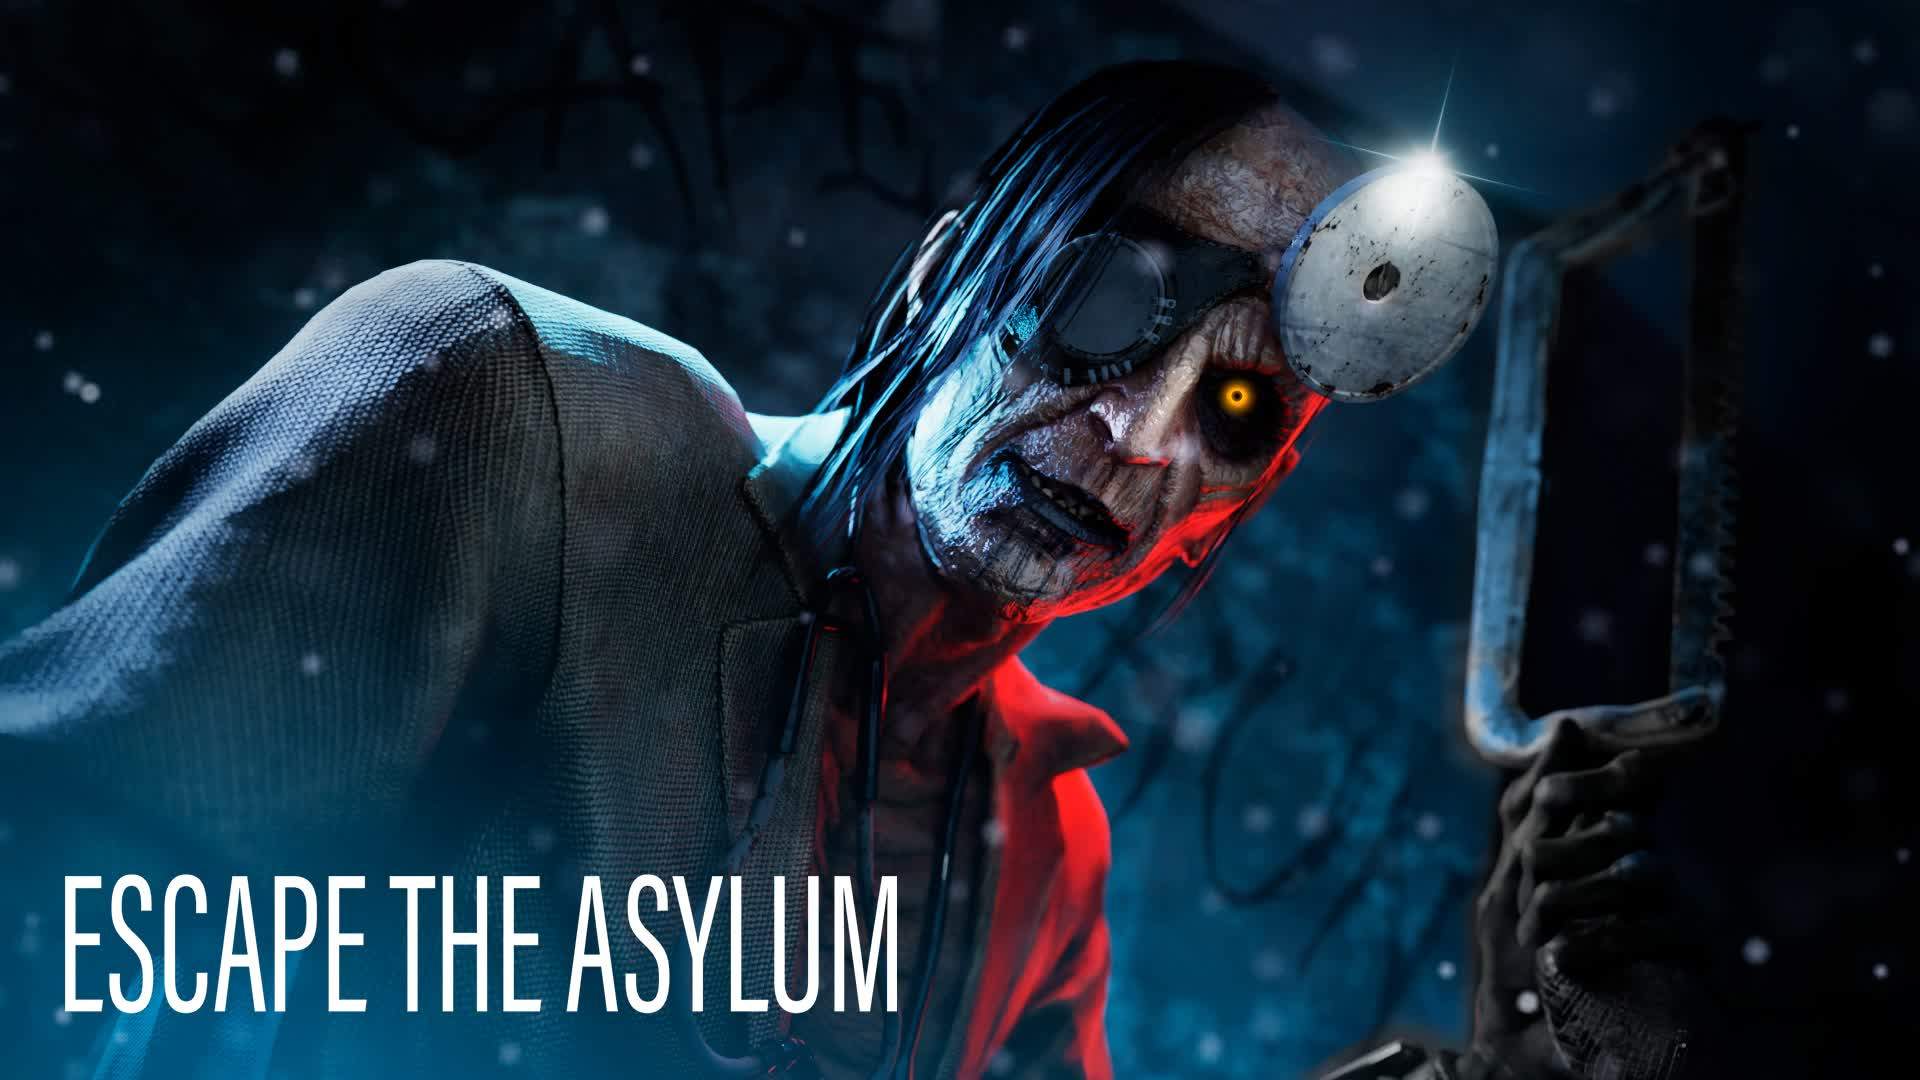 Escape The Asylum 【Horror】